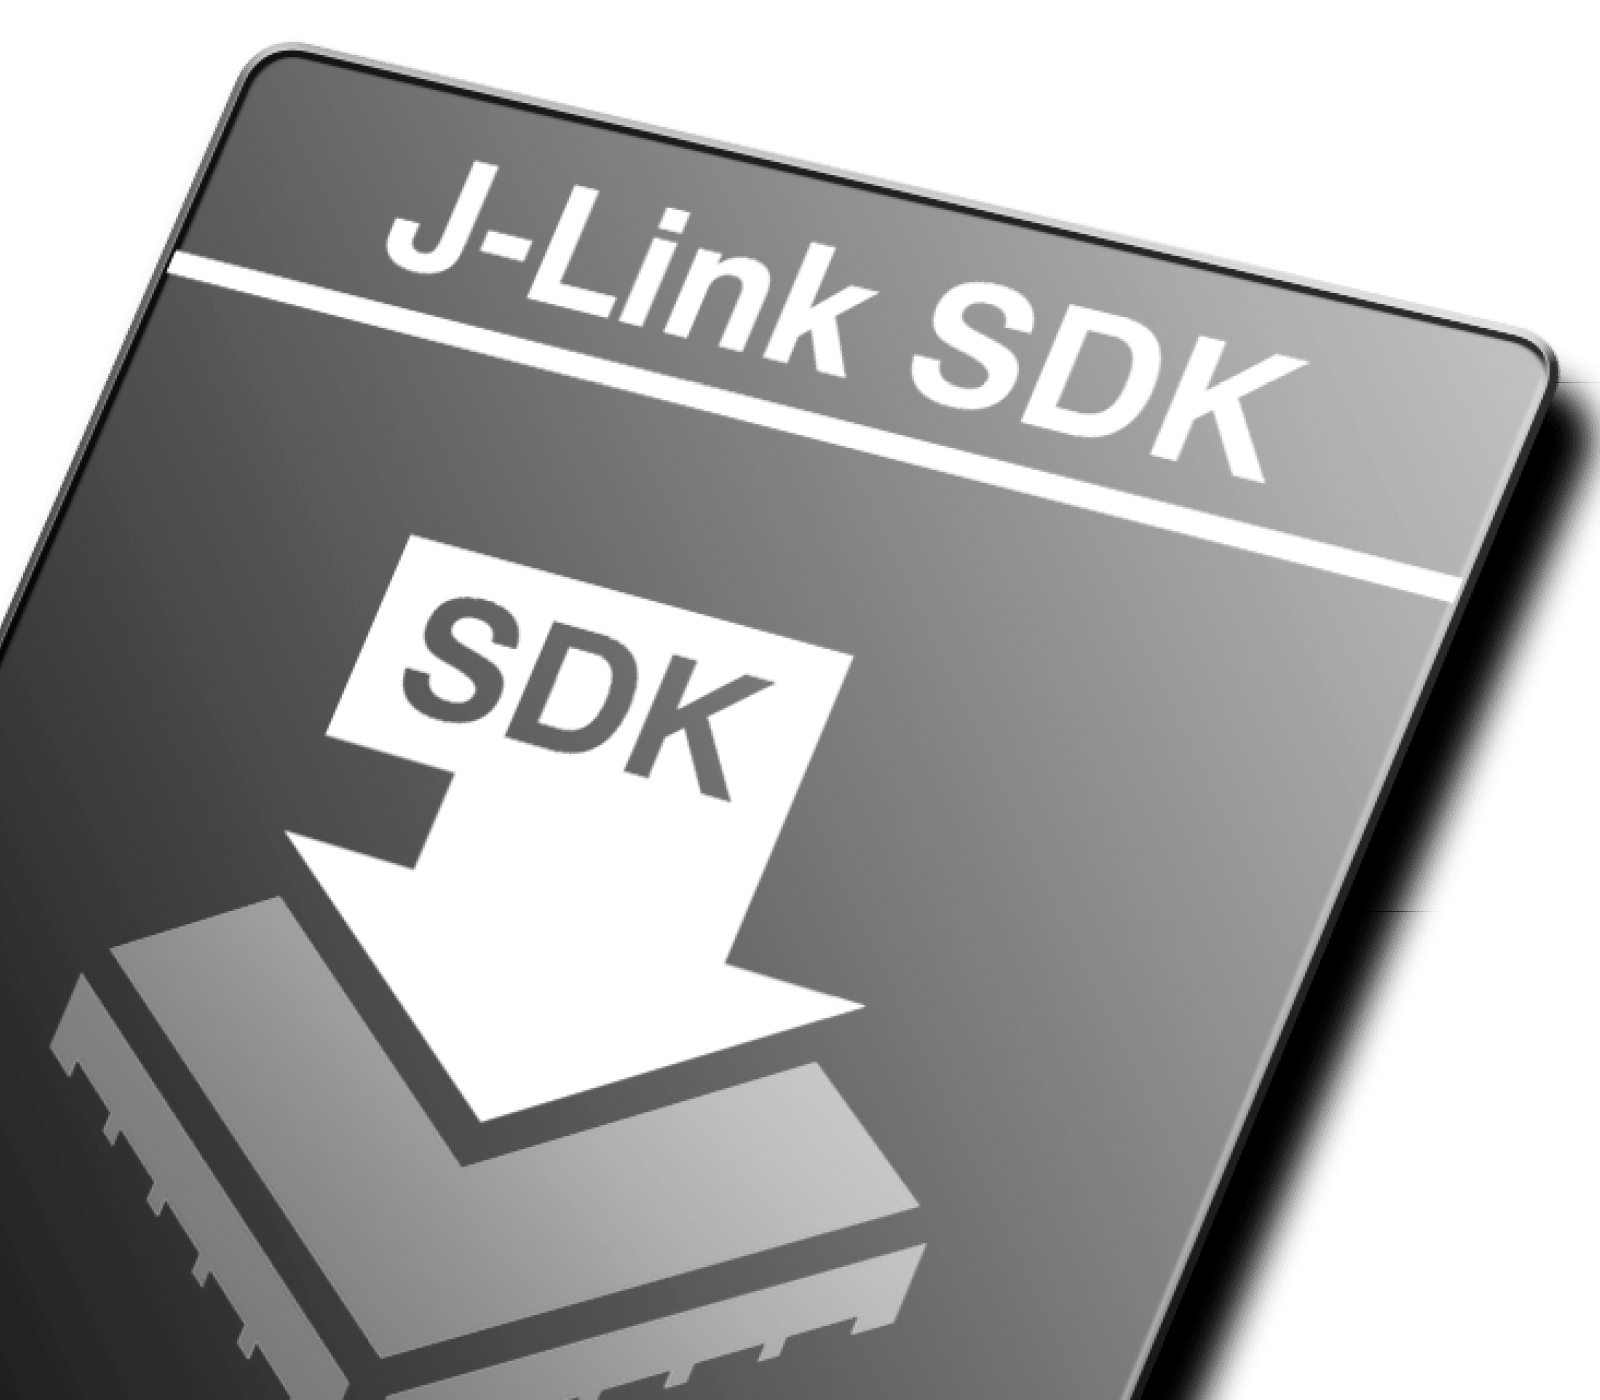 SEGGER J-Link SDK